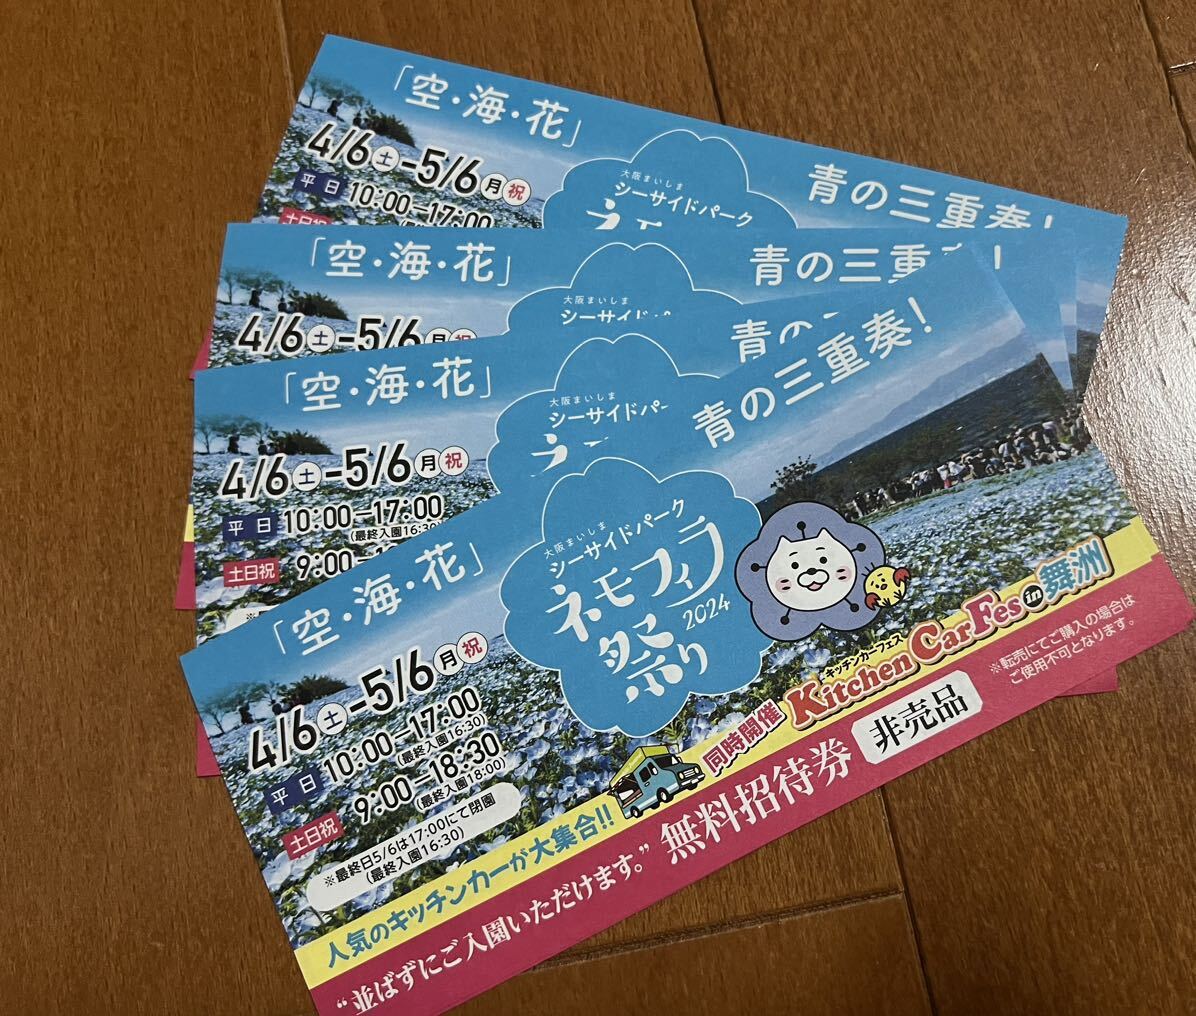 Фестиваль фестиваля Осаки Майшима Немофила бесплатно приглашение 4 штуки